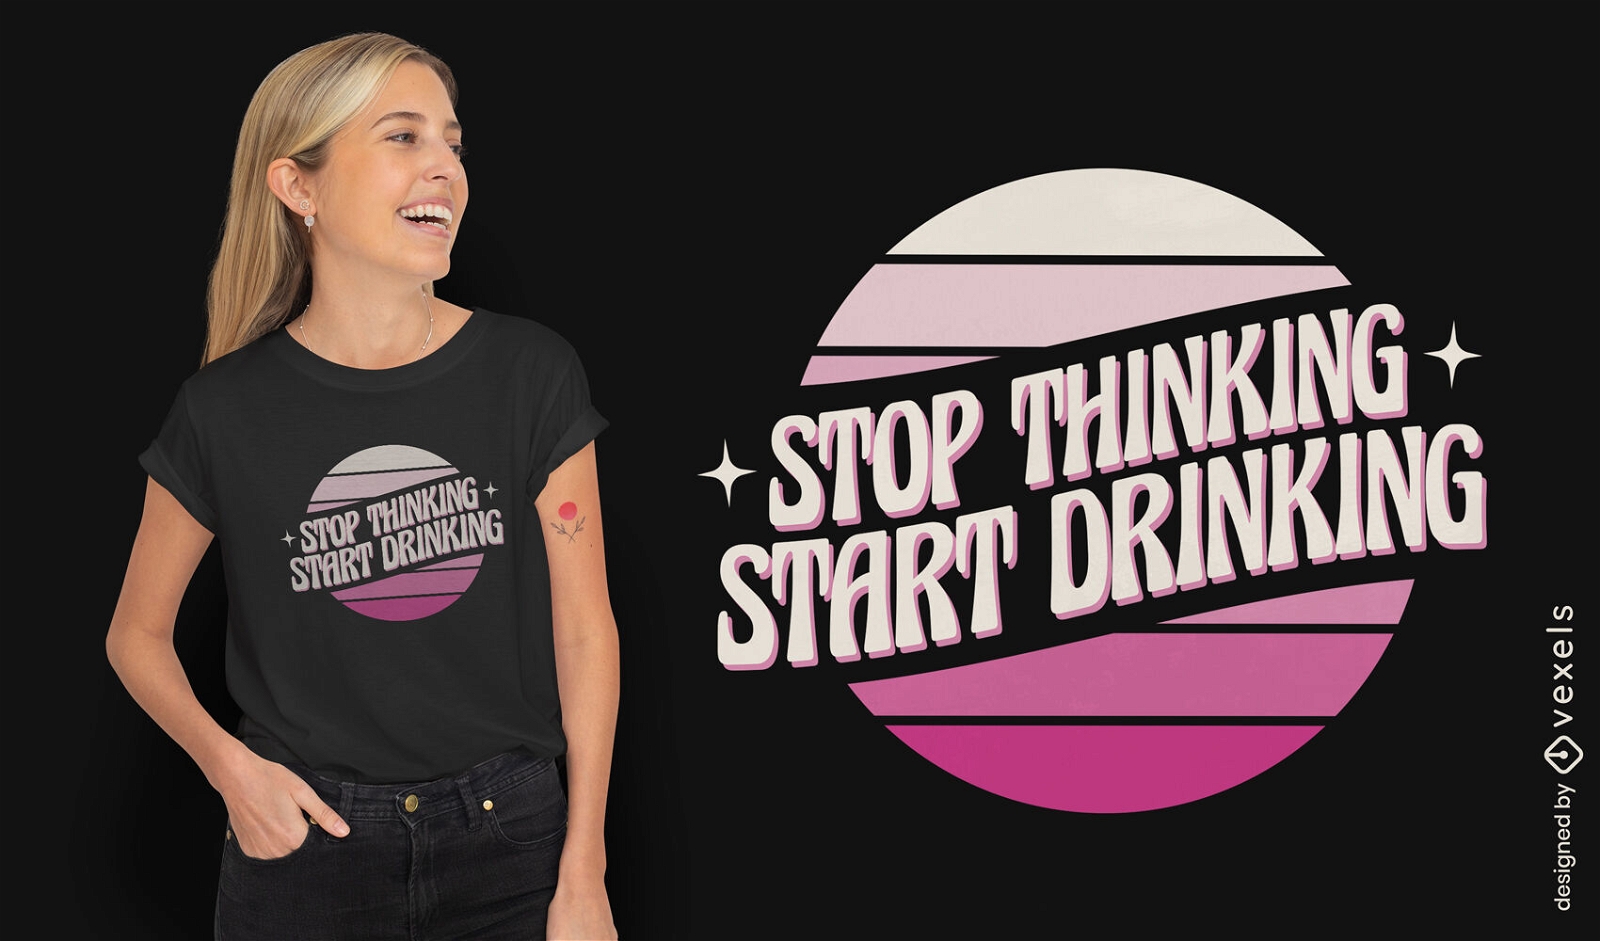 Hör auf zu denken, fang an, T-Shirt-Design zu trinken